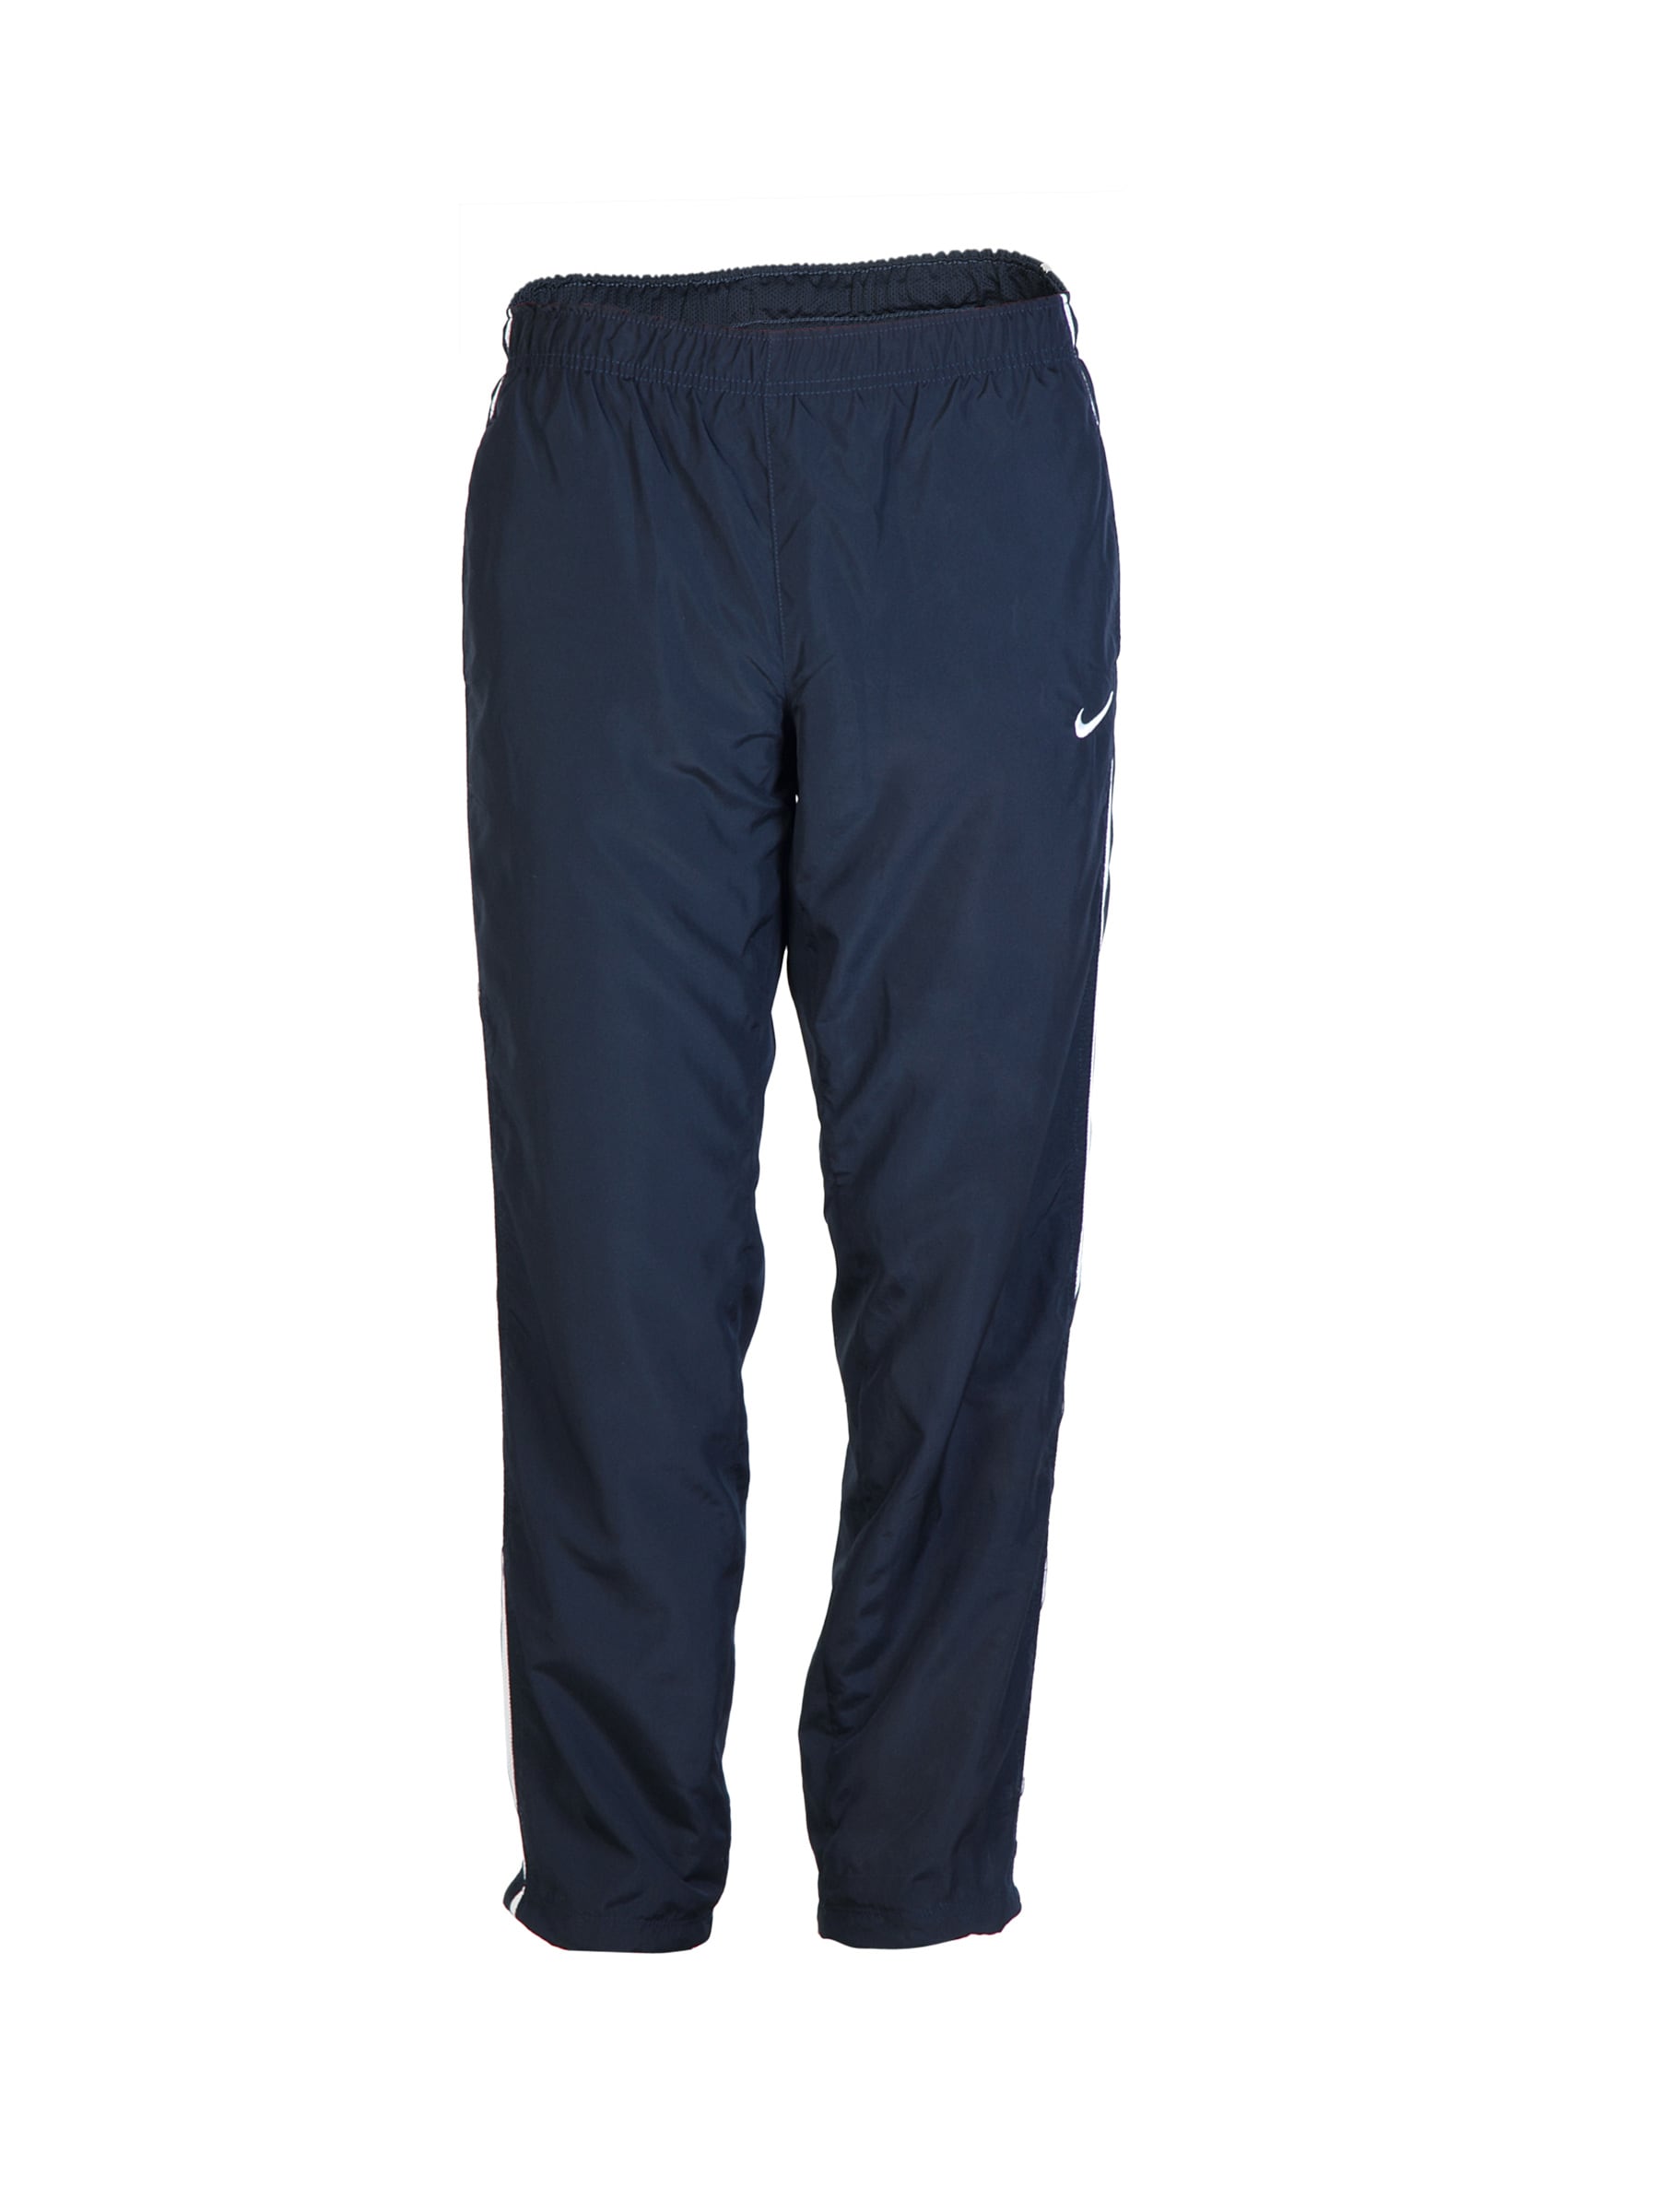 Nike Men Breakline Navy Blue Track Pants